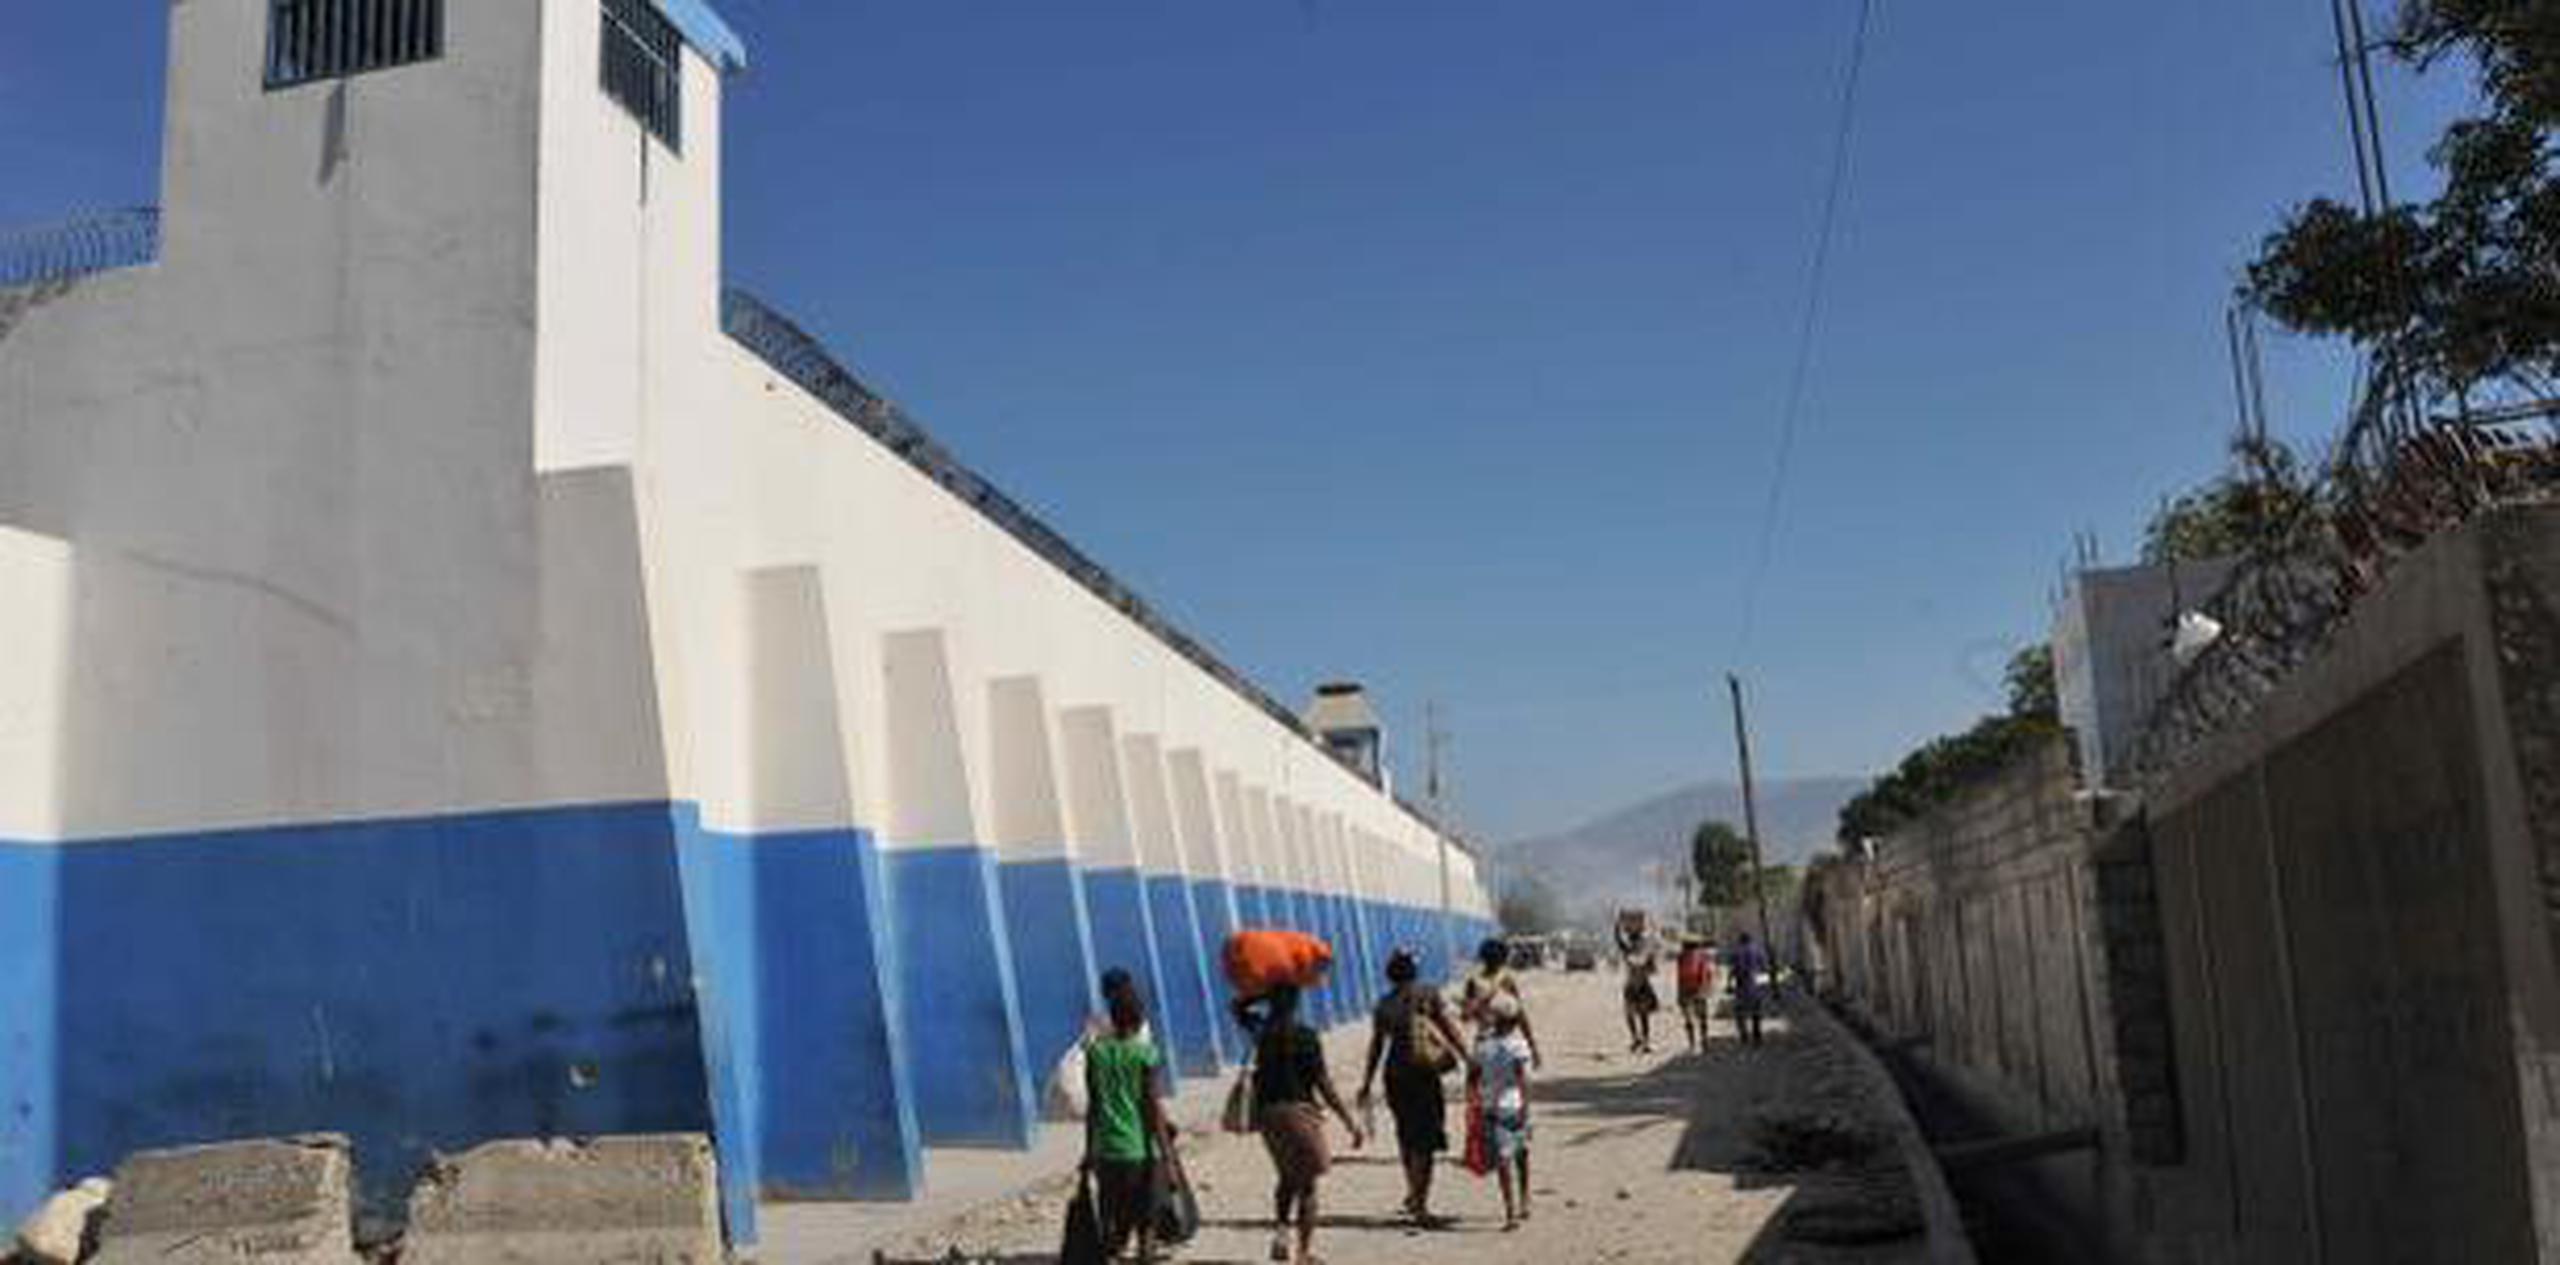 Medios de prensa en Haití han publicado que los presos aprovecharon que los policías se enfrentaban a los manifestantes para escapar del recinto. (EFE)